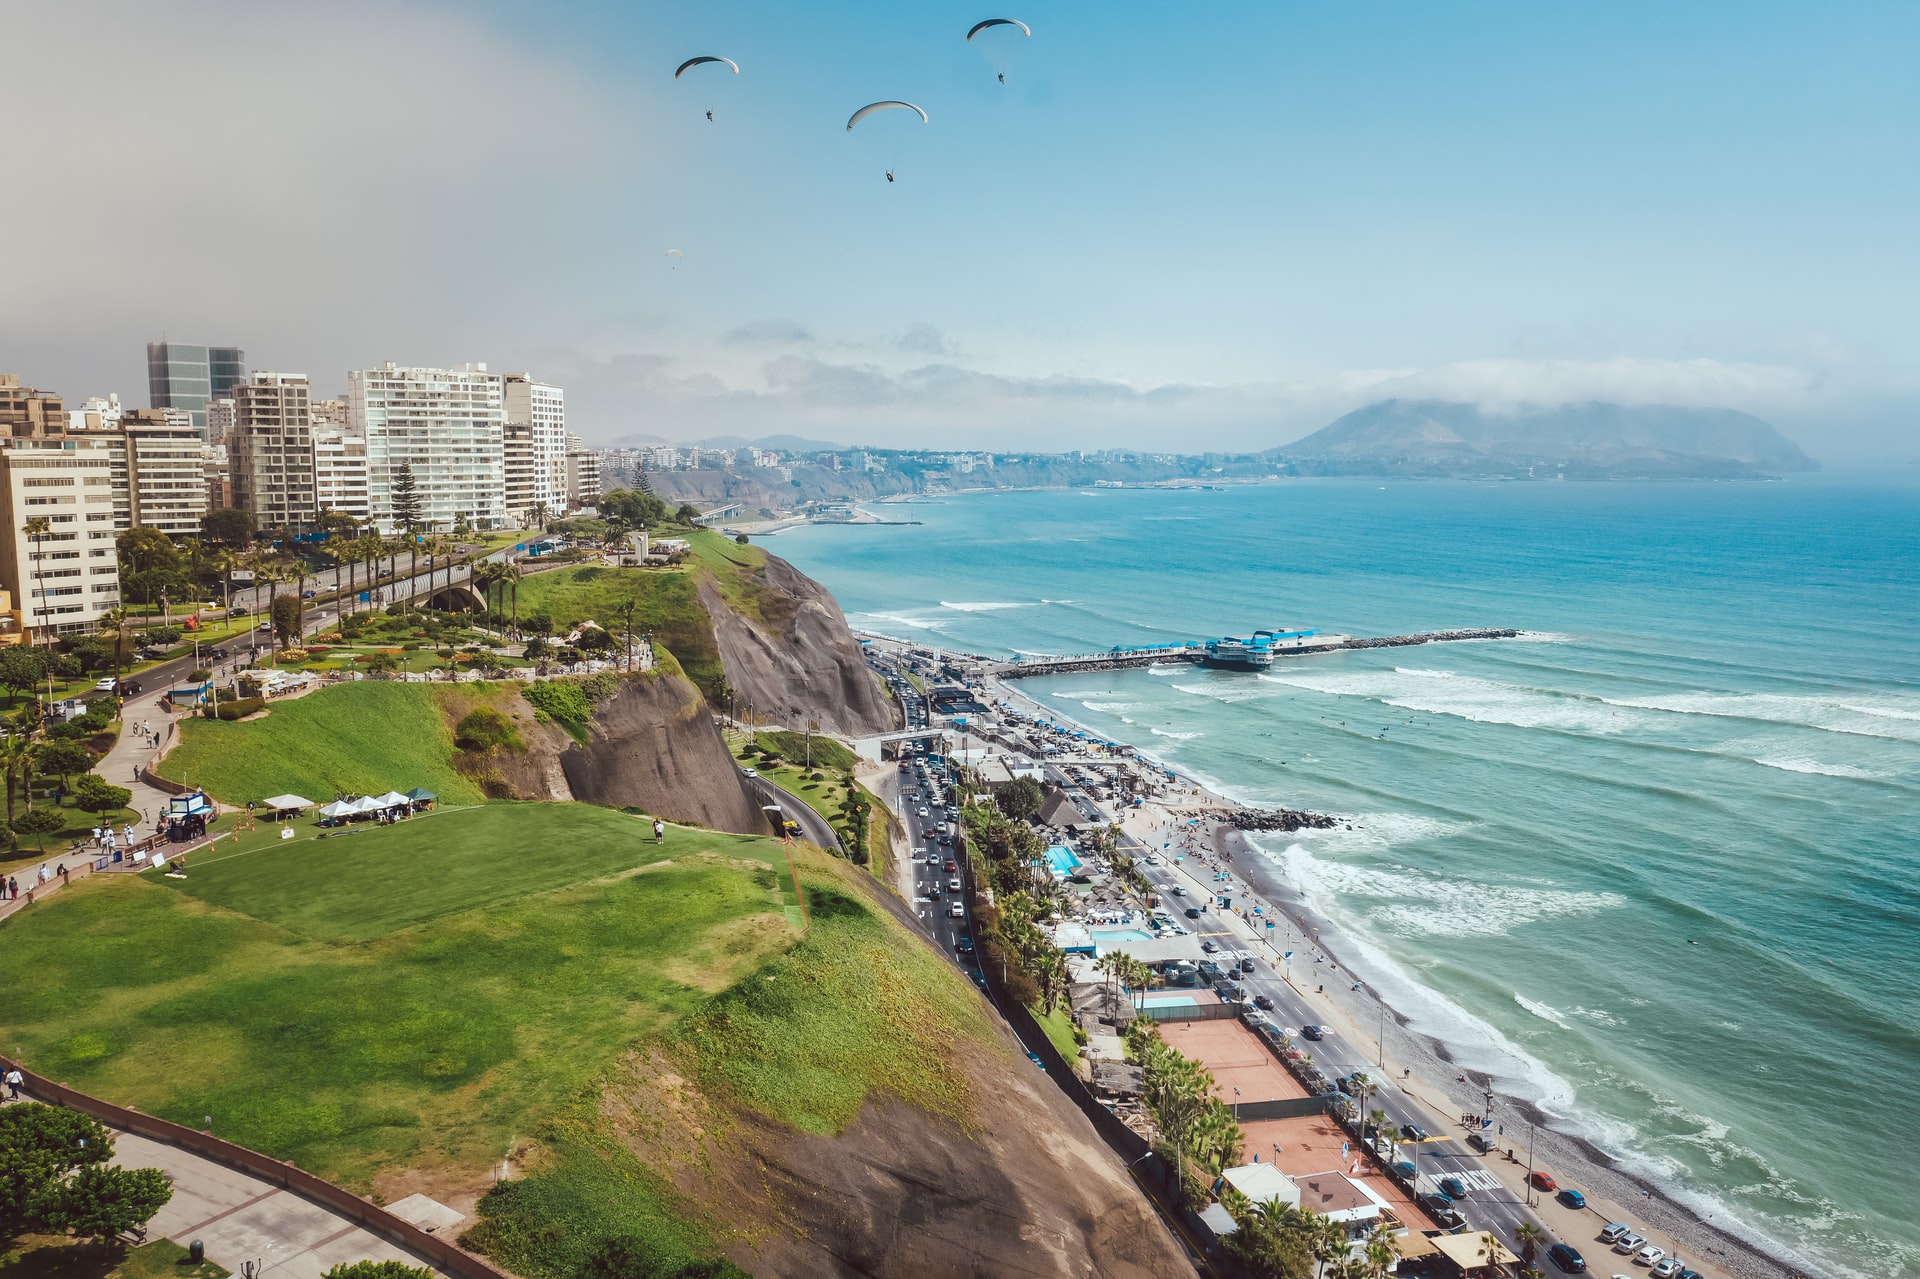 City of Lima in Peru